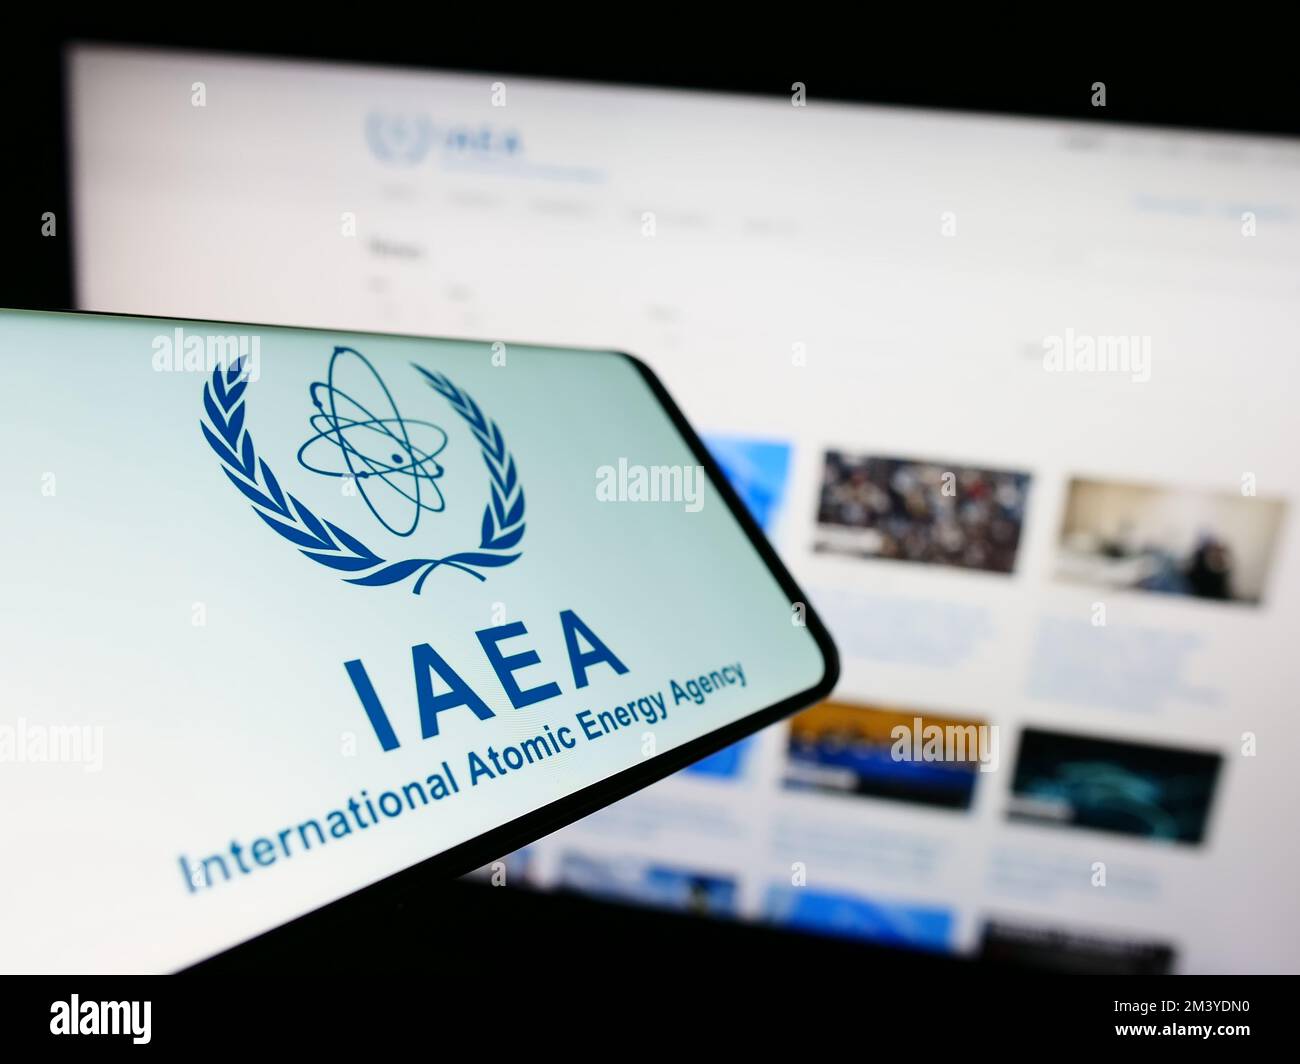 Smartphone con logo dell'Agenzia internazionale dell'energia atomica (AIEA) sullo schermo davanti al sito Web. Messa a fuoco al centro a destra del display del telefono. Foto Stock